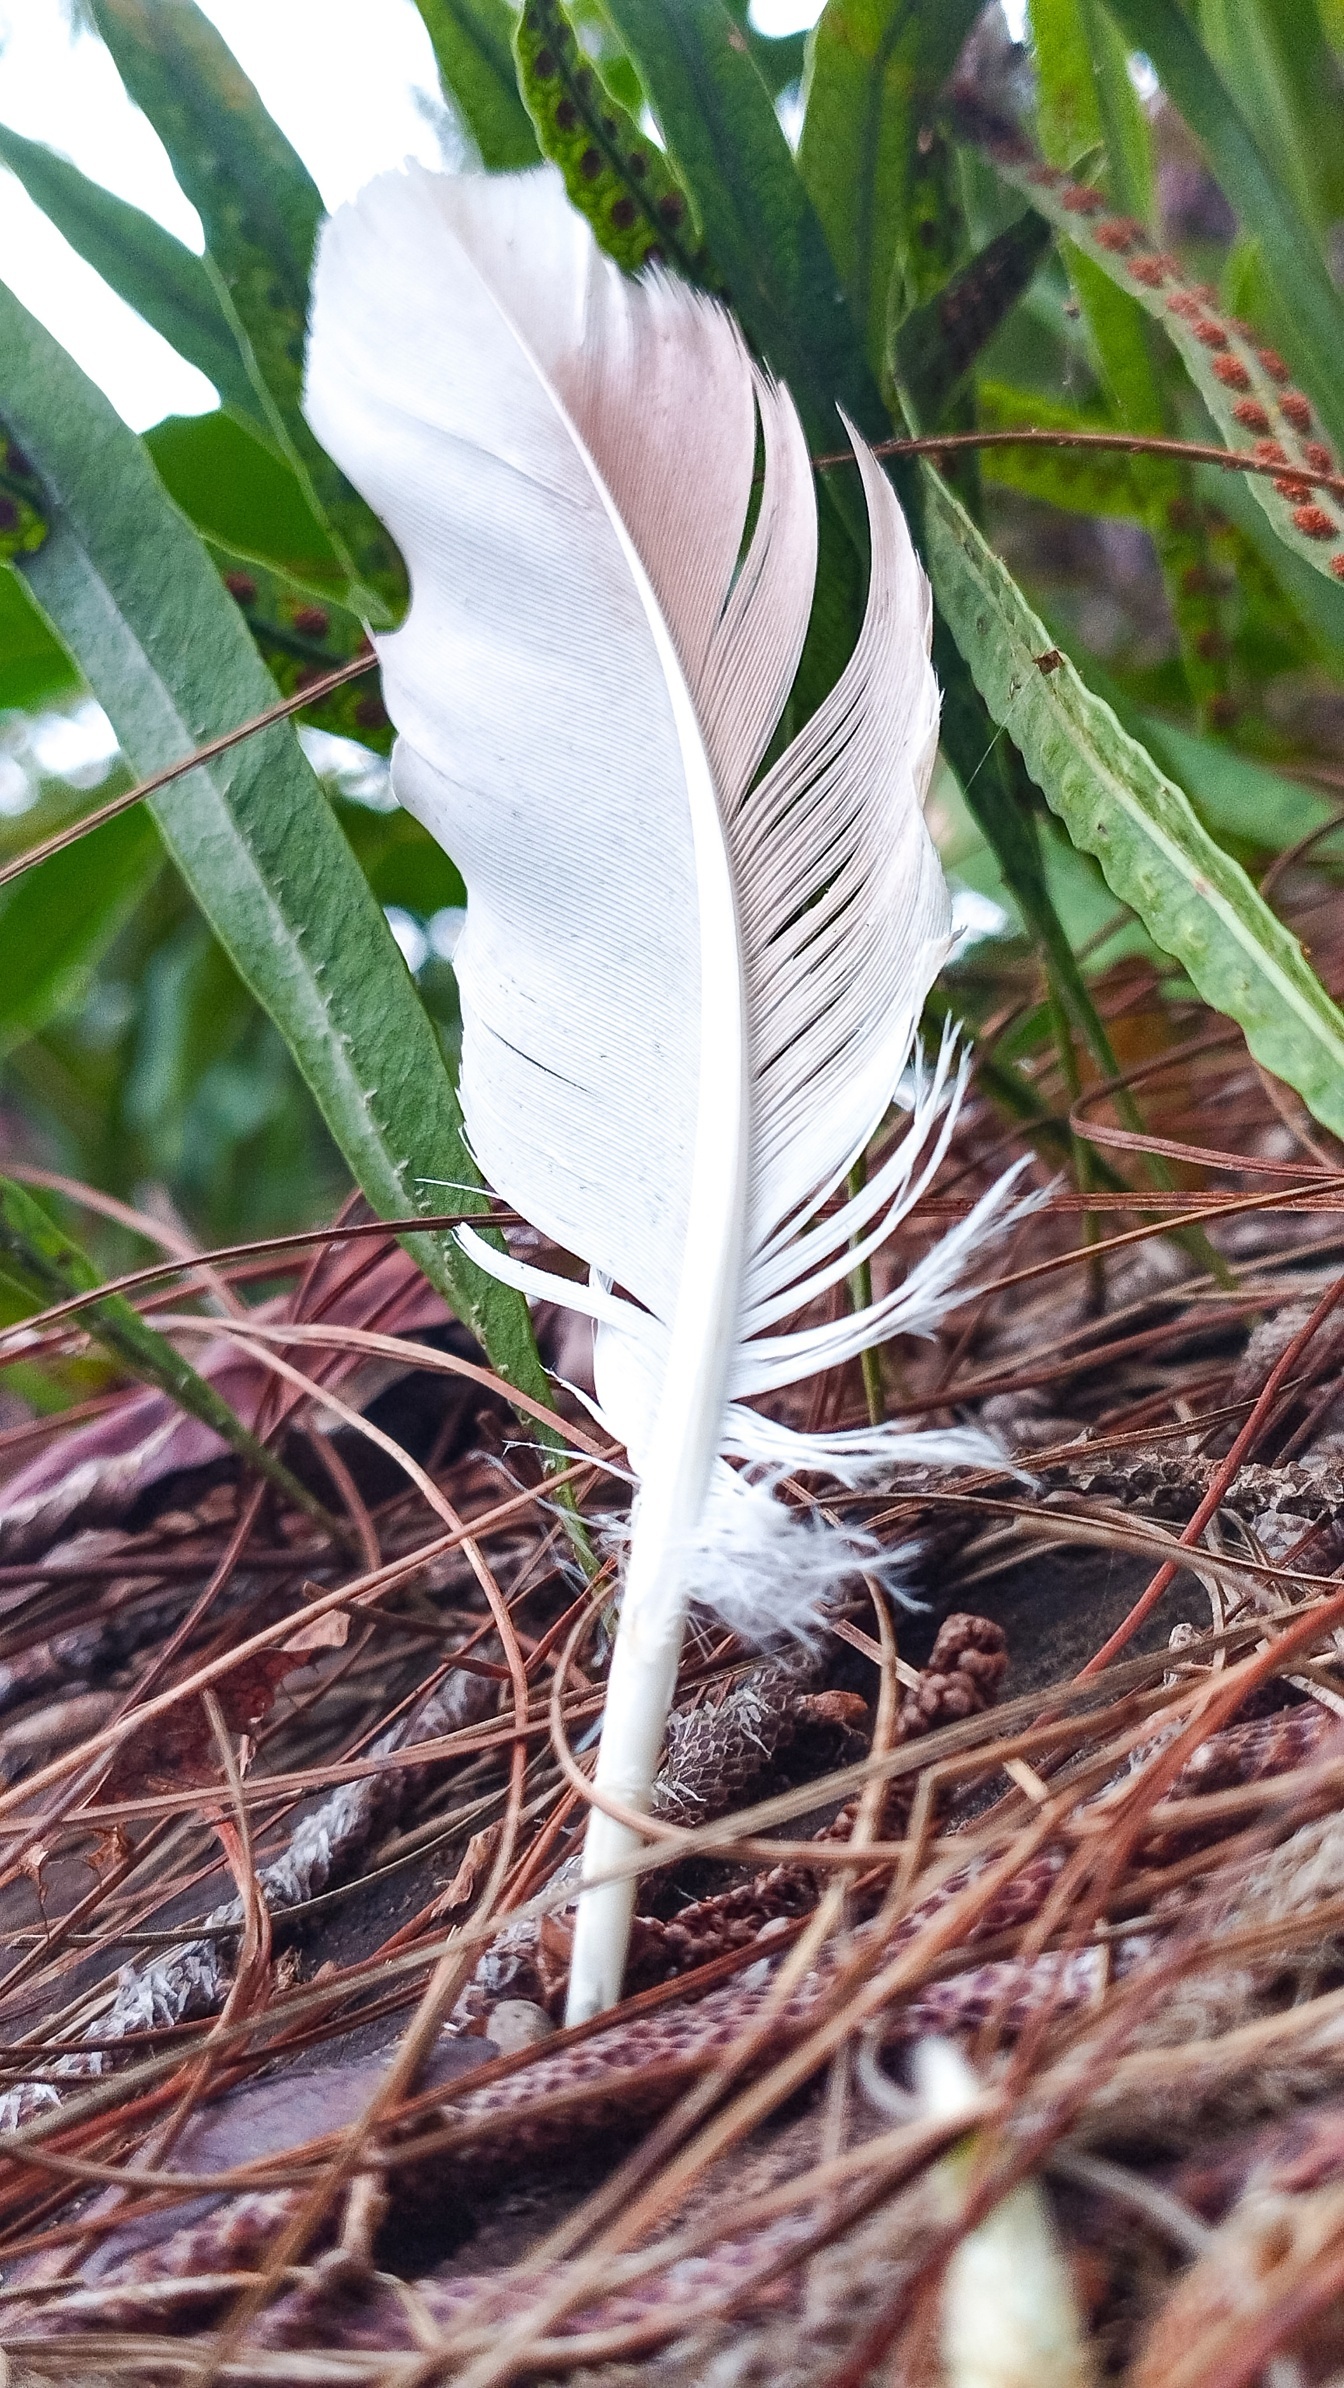 마른 소나무 잎 사이로 땅에 흰 깃털